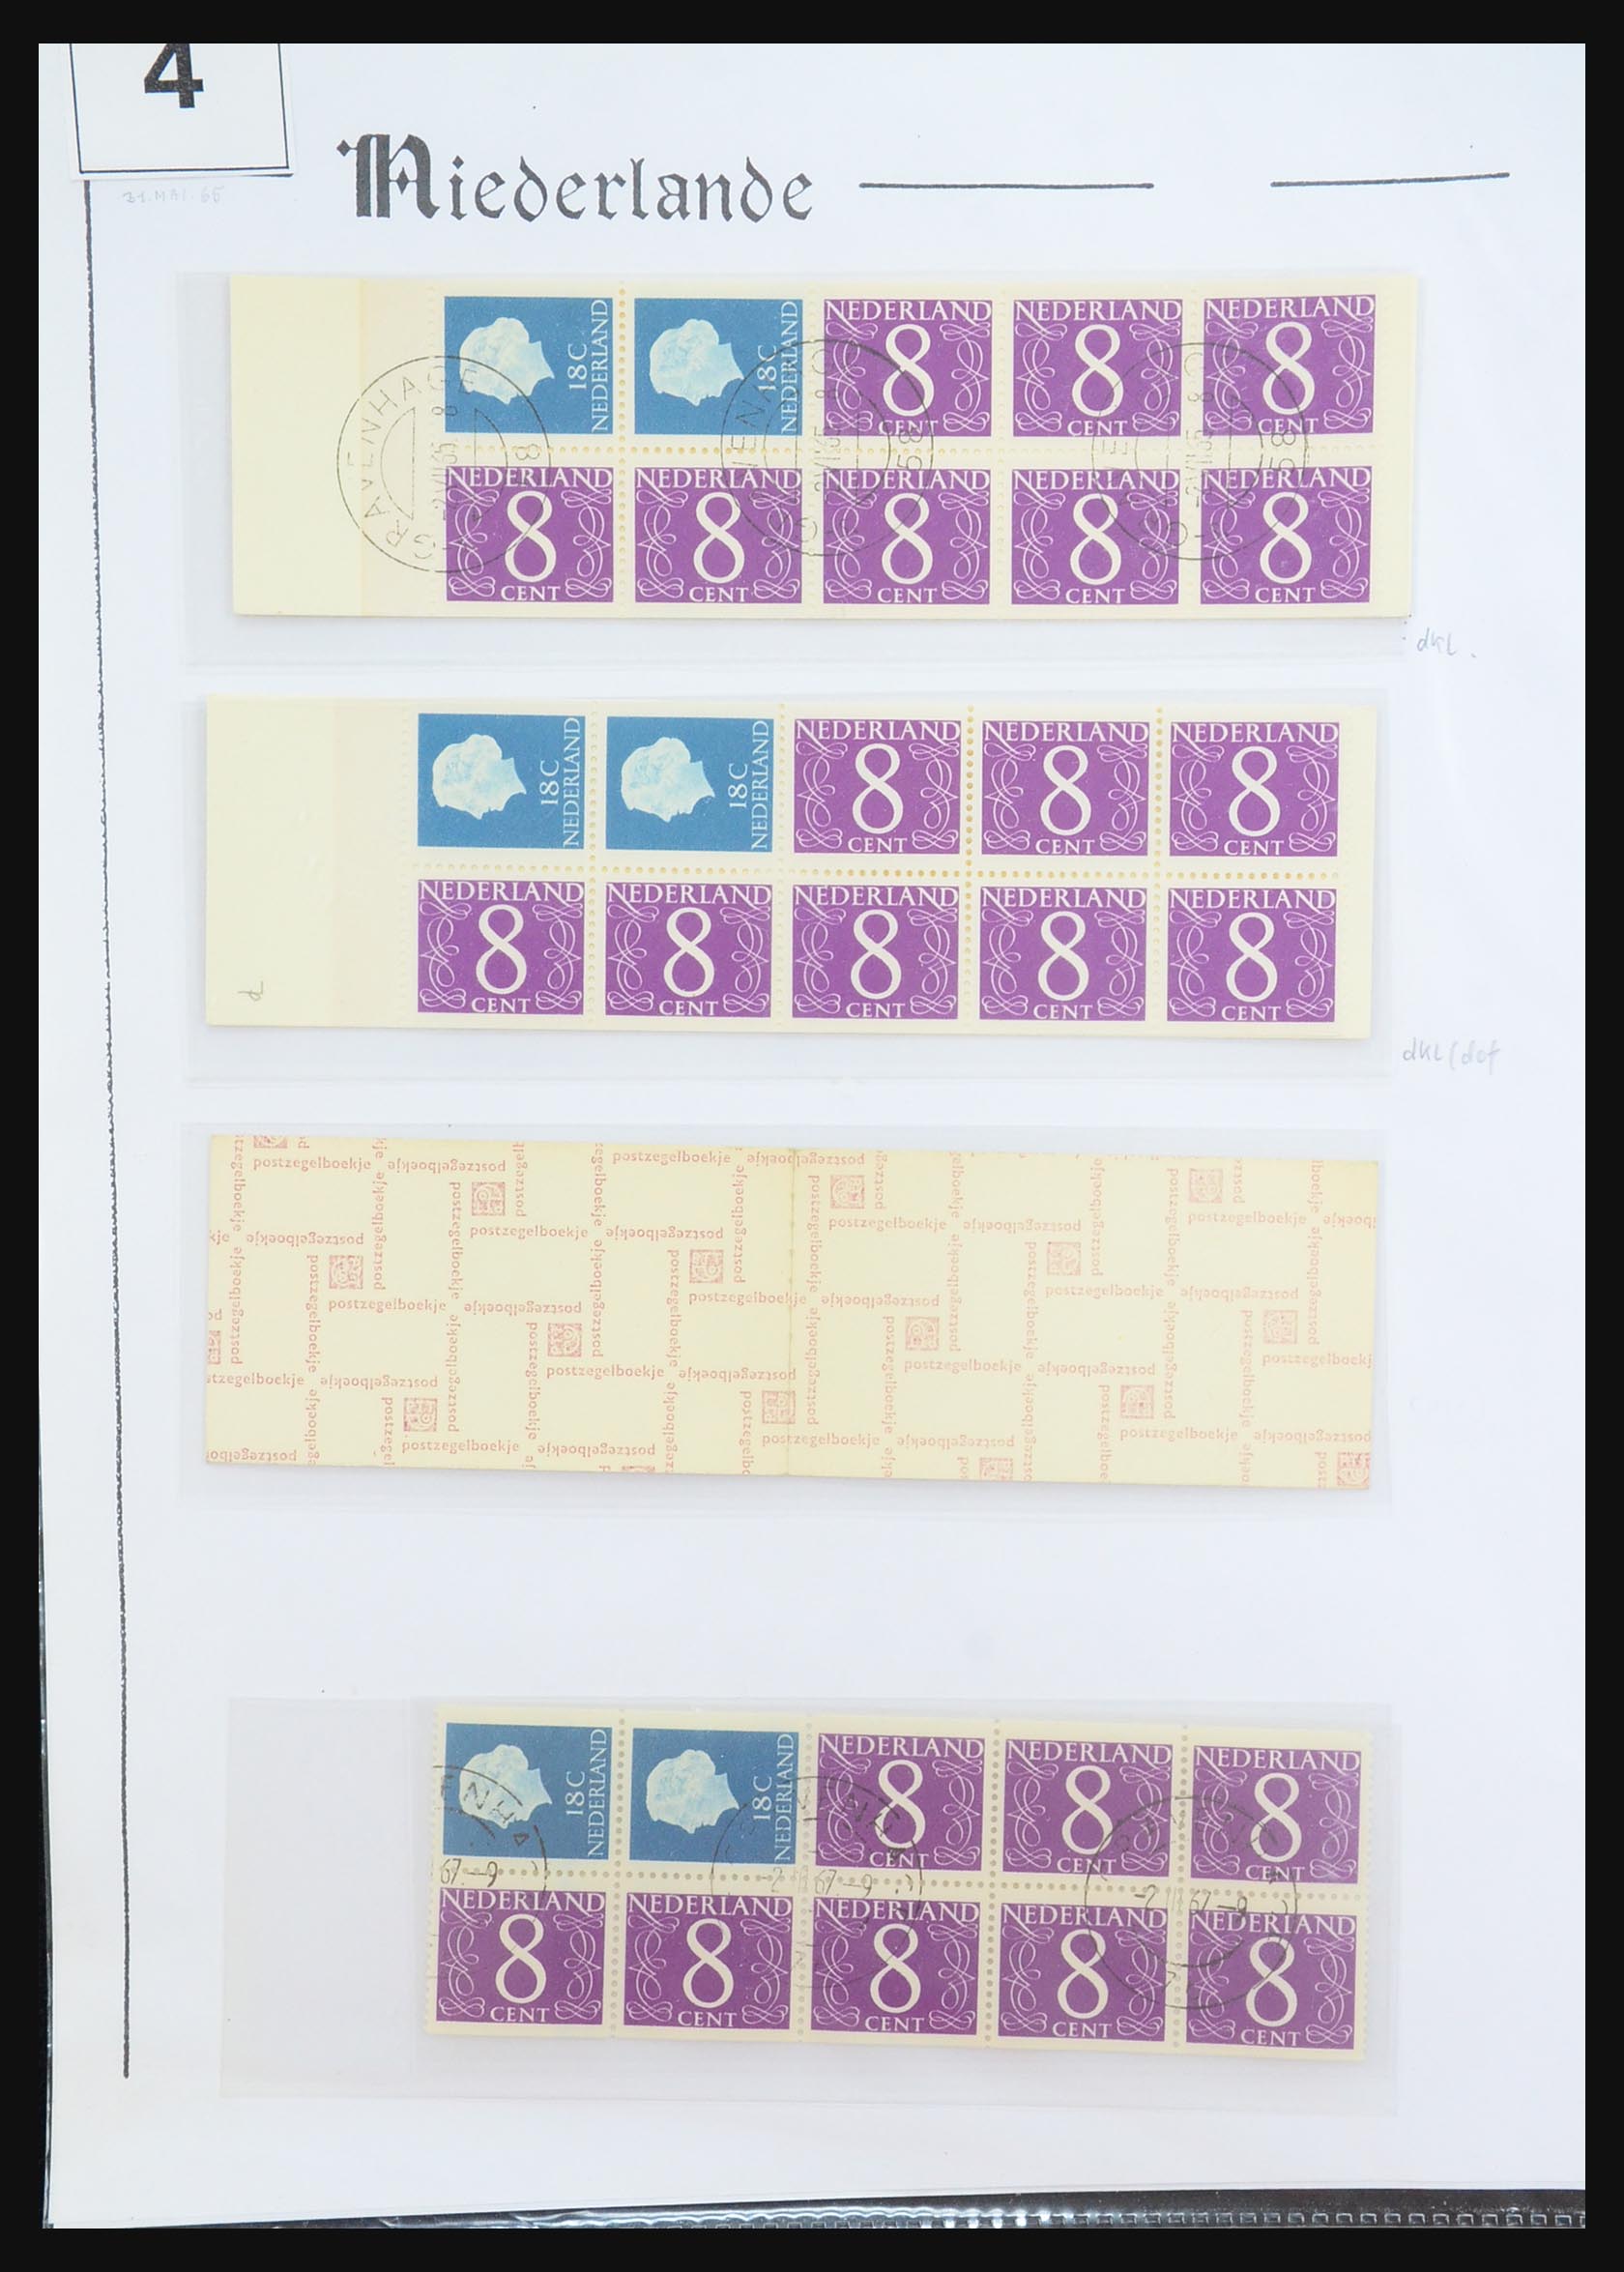 31311 007 - 31311 Netherlands stamp booklets 1964-1994.